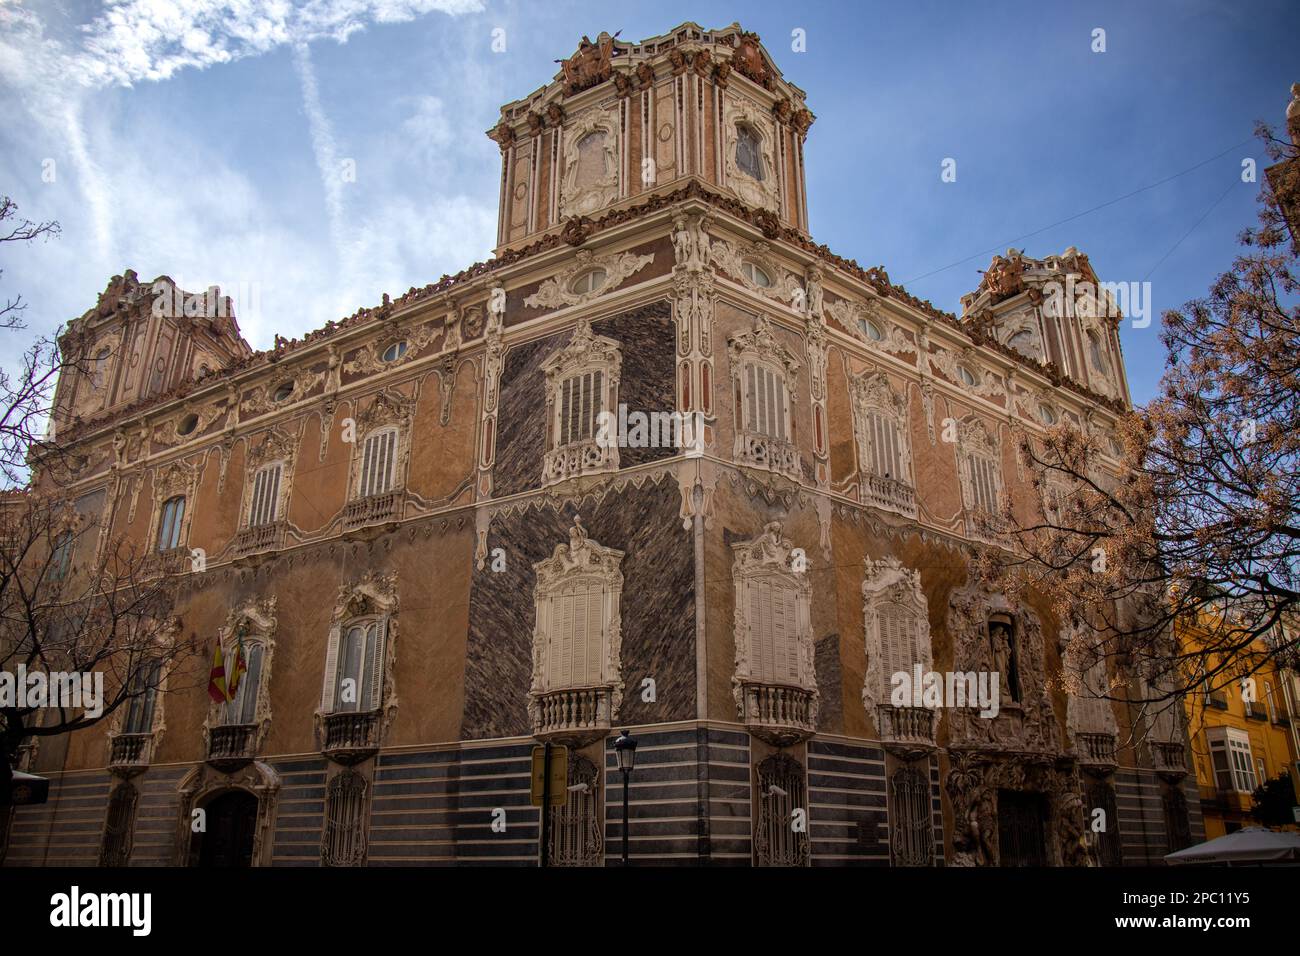 Palacio del marqués de dos aguas con su impresionante fachada barroca, hoy Museo Nacional de Cerámica y Artes Suntuarias. Valence, Espagne Banque D'Images